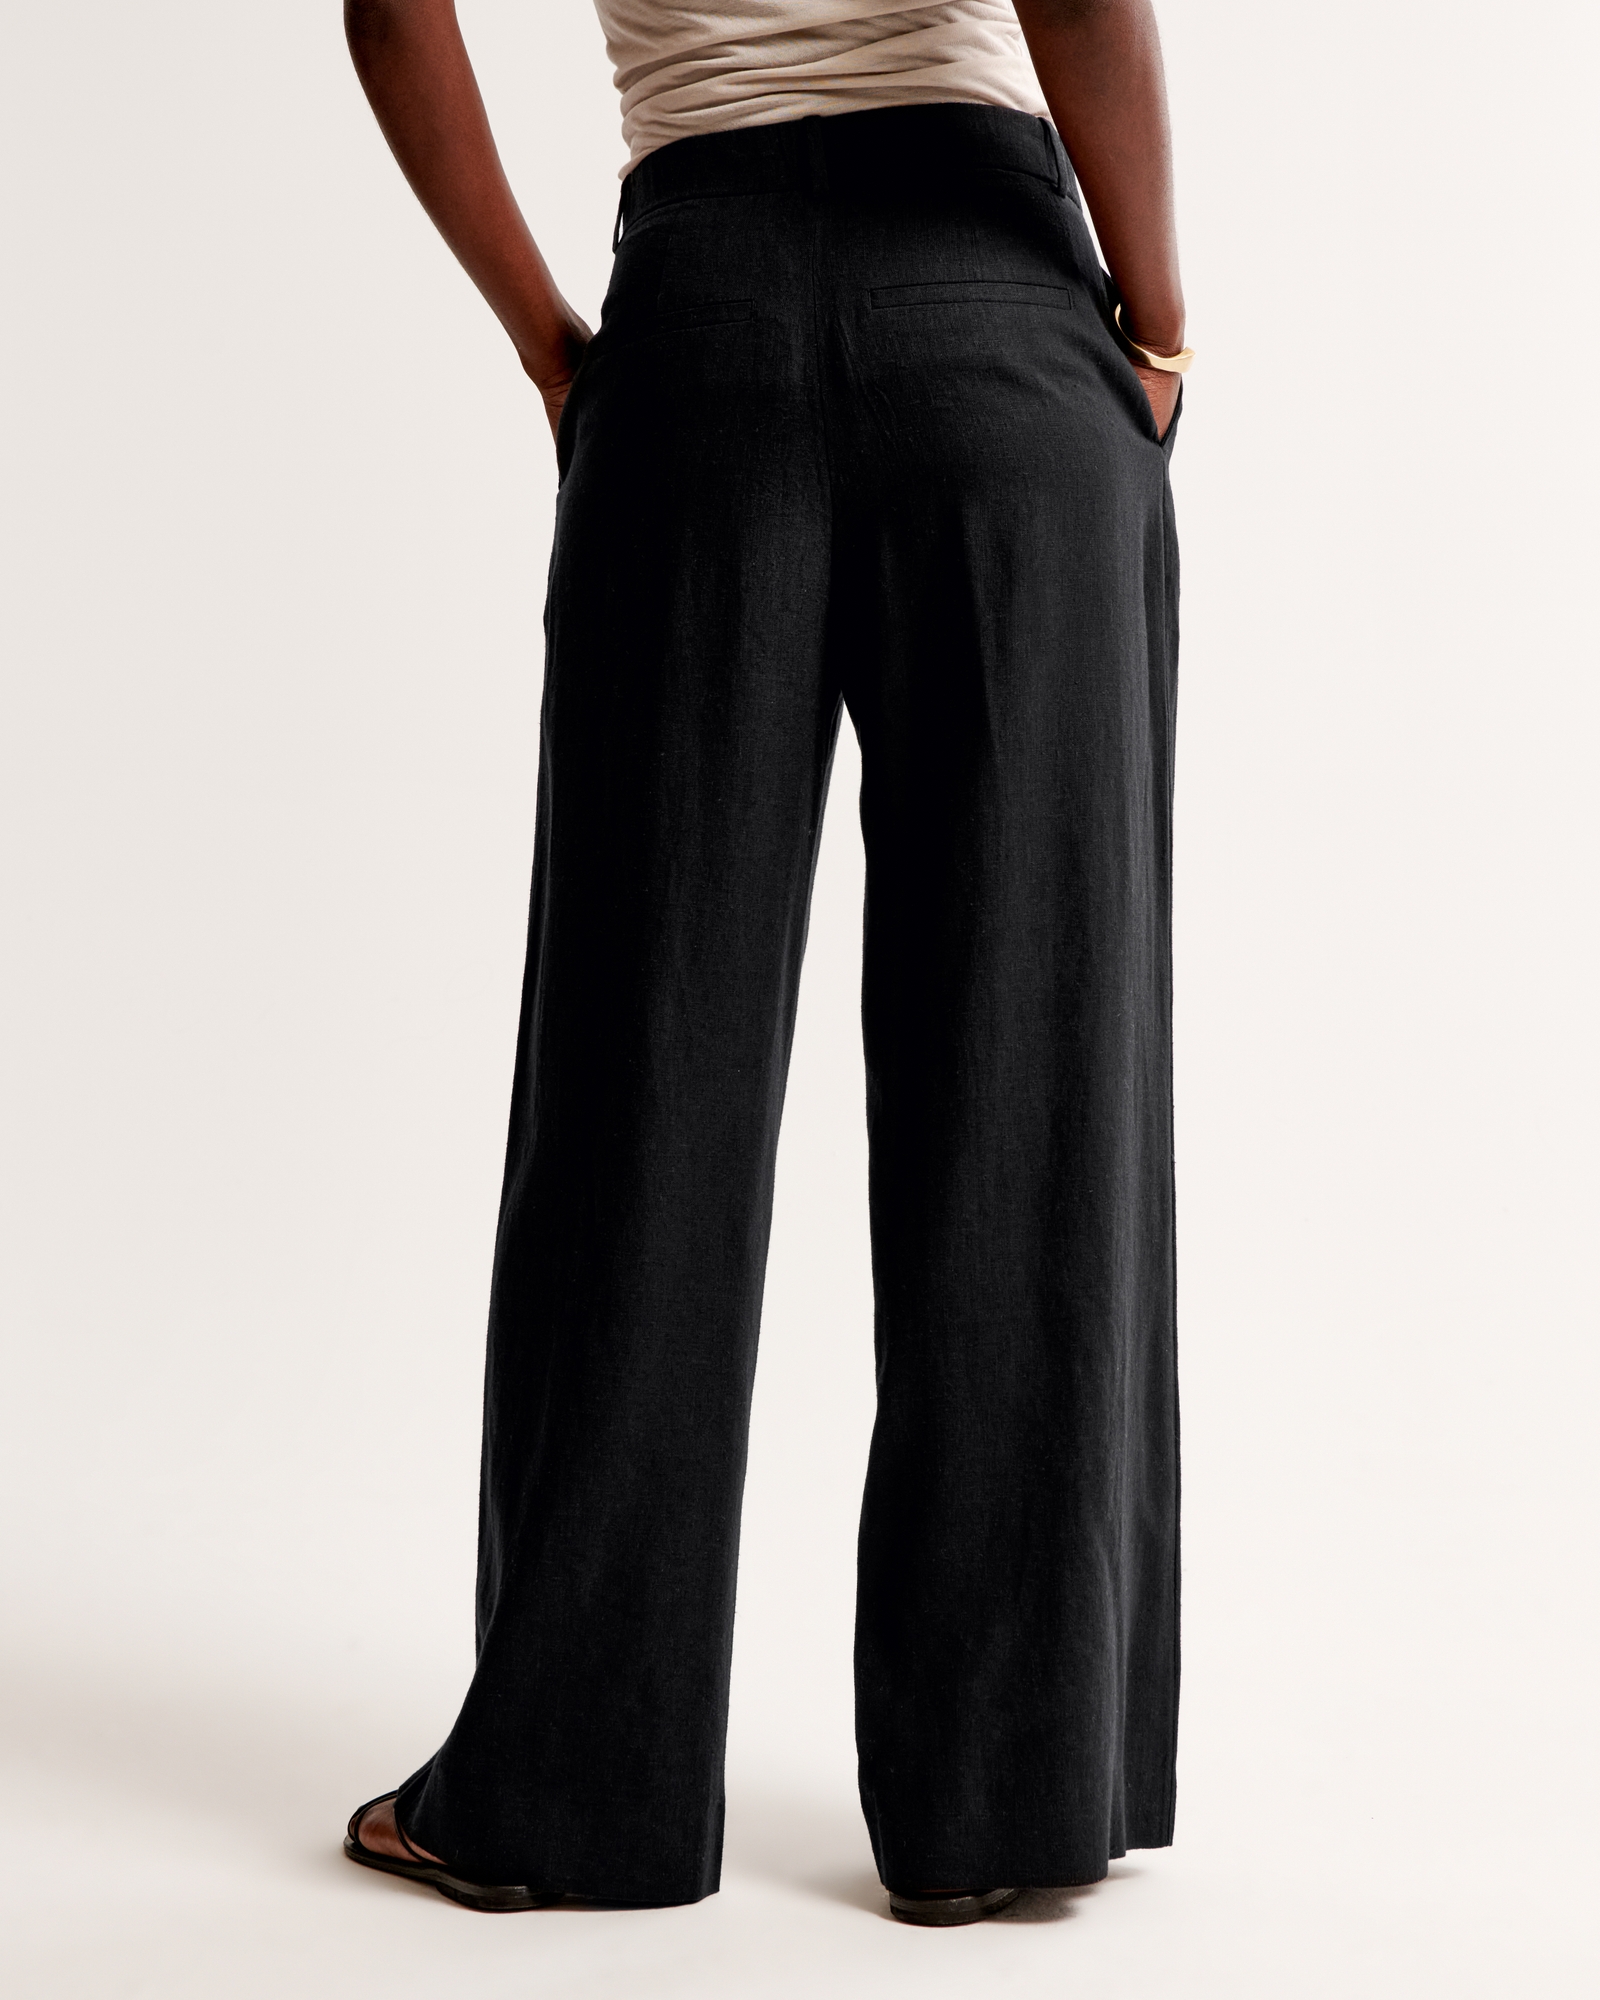 A&F Harper Tailored Linen-Blend Pant